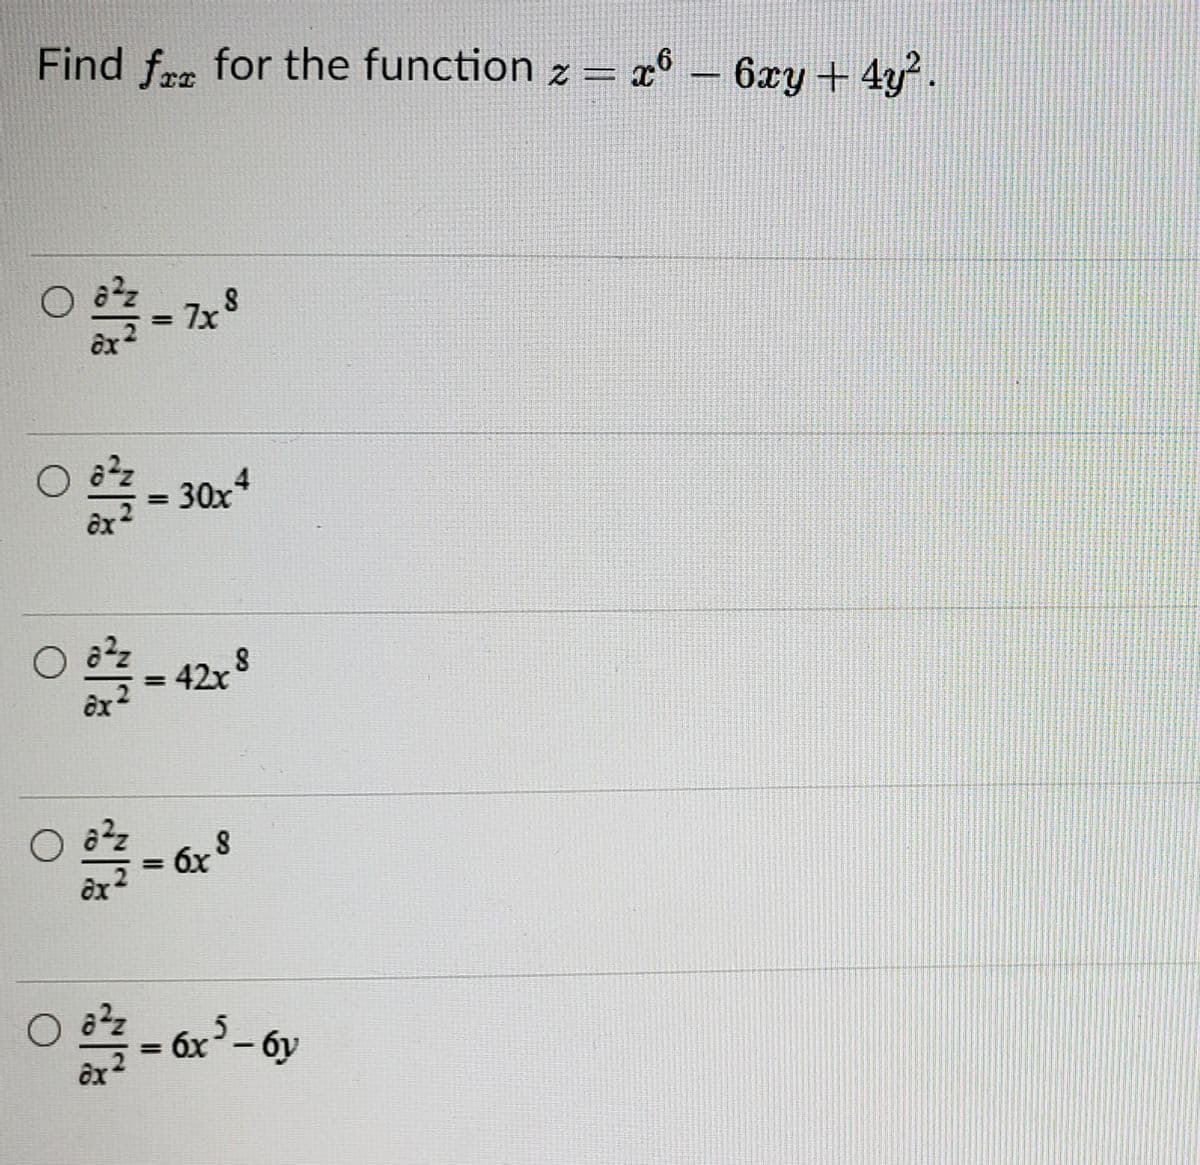 Find fre for the function z = x° – 6xy + 4y.
7x 8
ôx
%3D
= 30x
4
= 42x
%3D
бх
6x-6y
%3D
